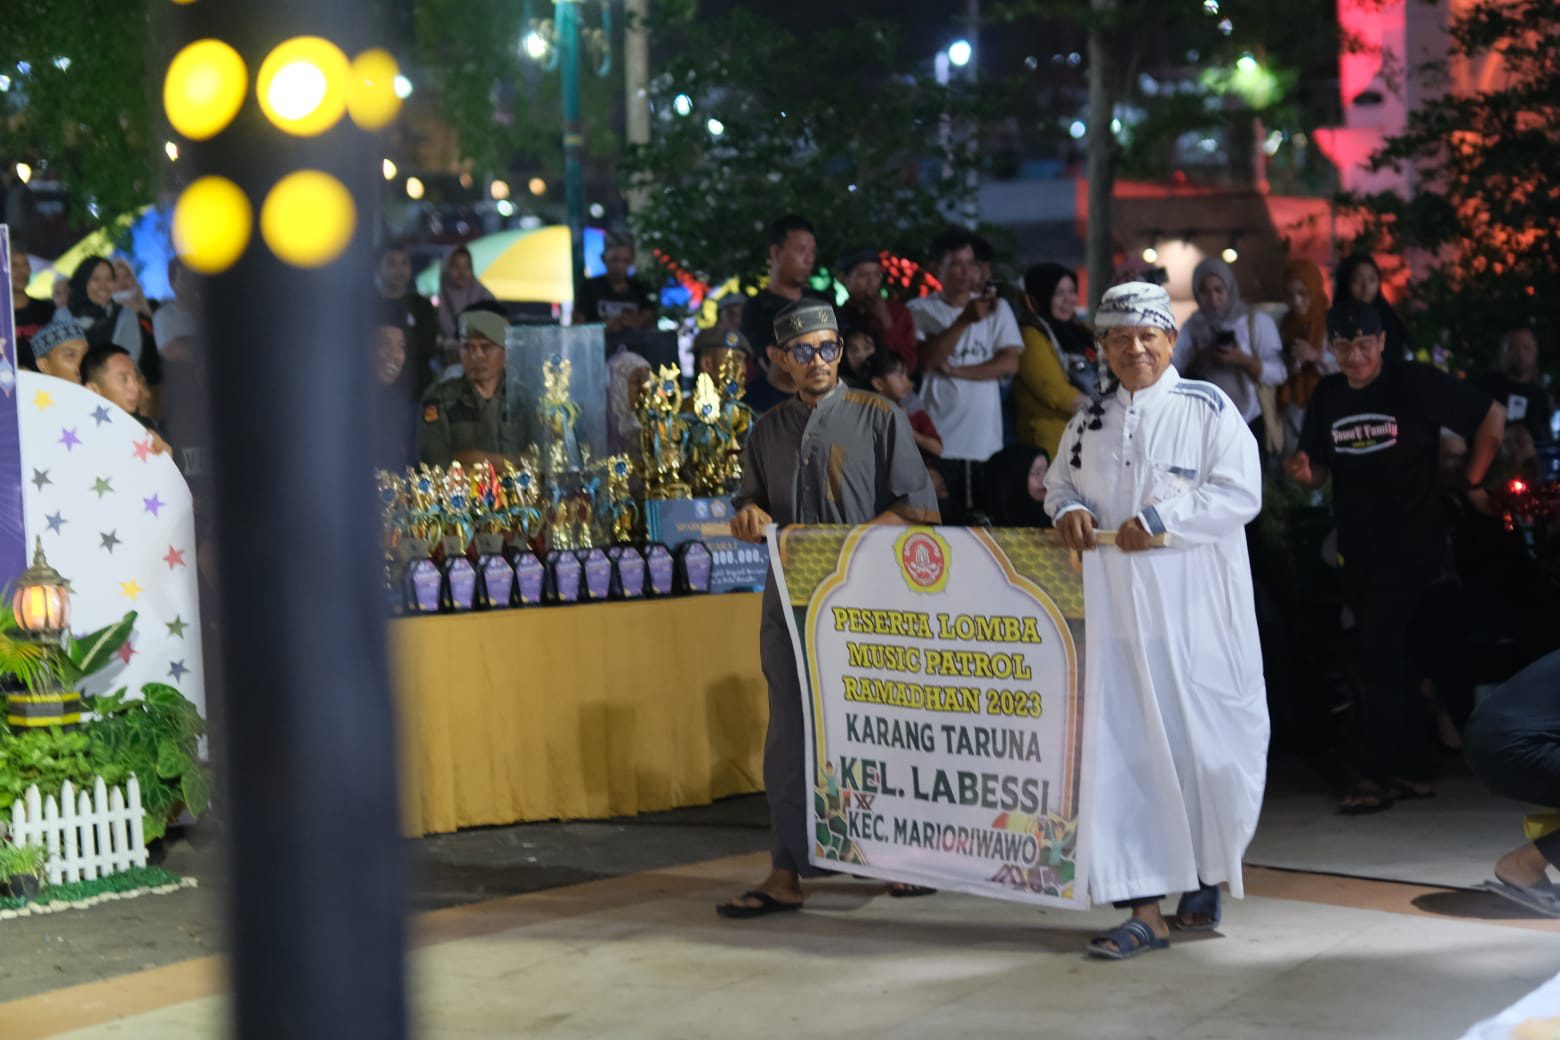 Sekertaris Daerah Buka Sparkling Ramadhan Lomba Musik Patrol